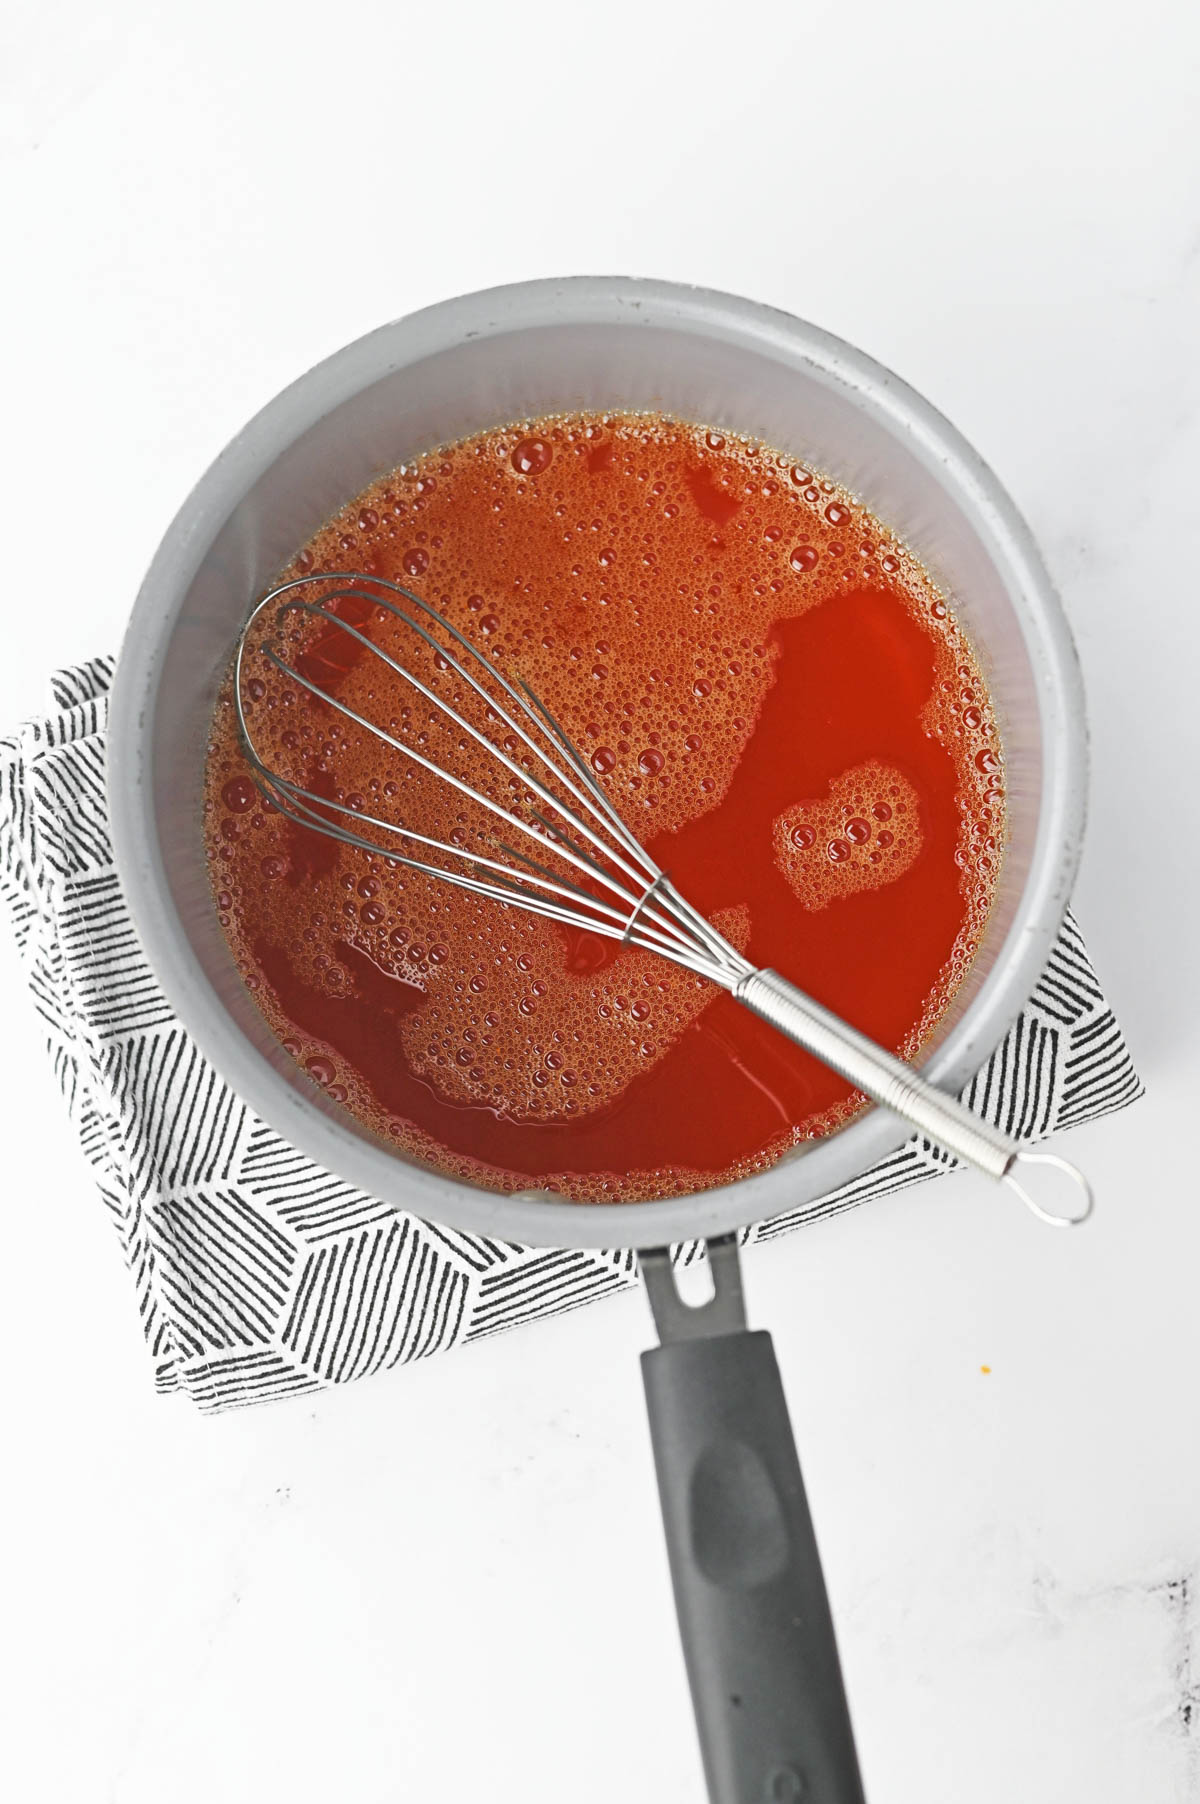 Whisk in orange jello in saucepan